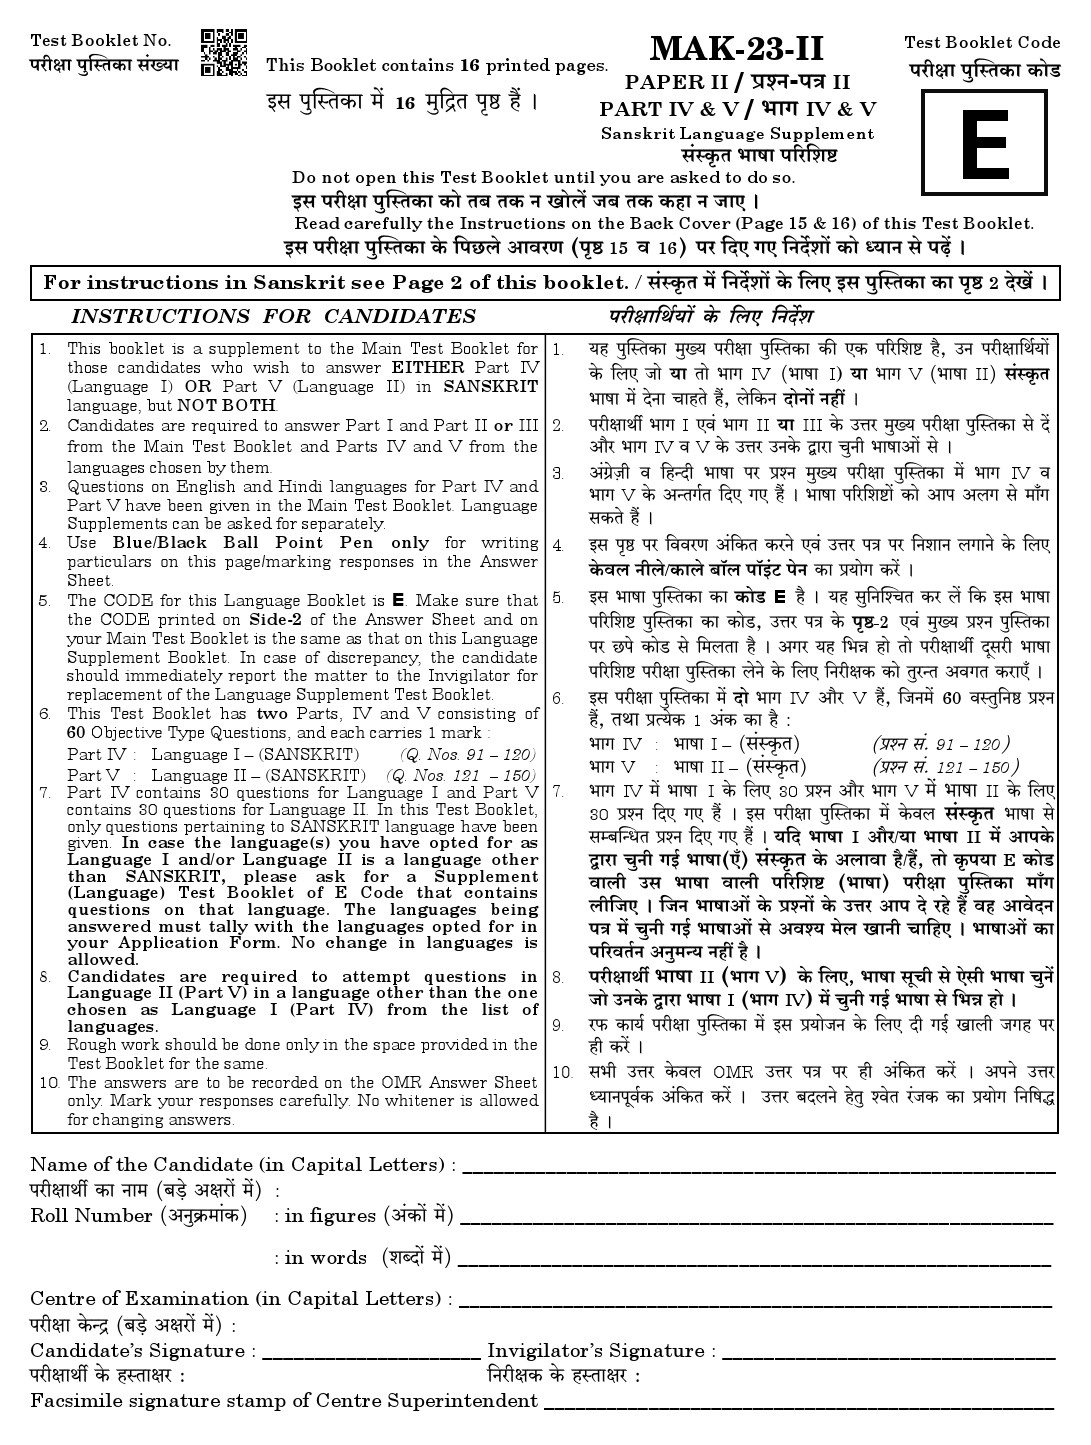 CTET August 2023 Sanskrit Language Supplement Paper II Part IV and V 1